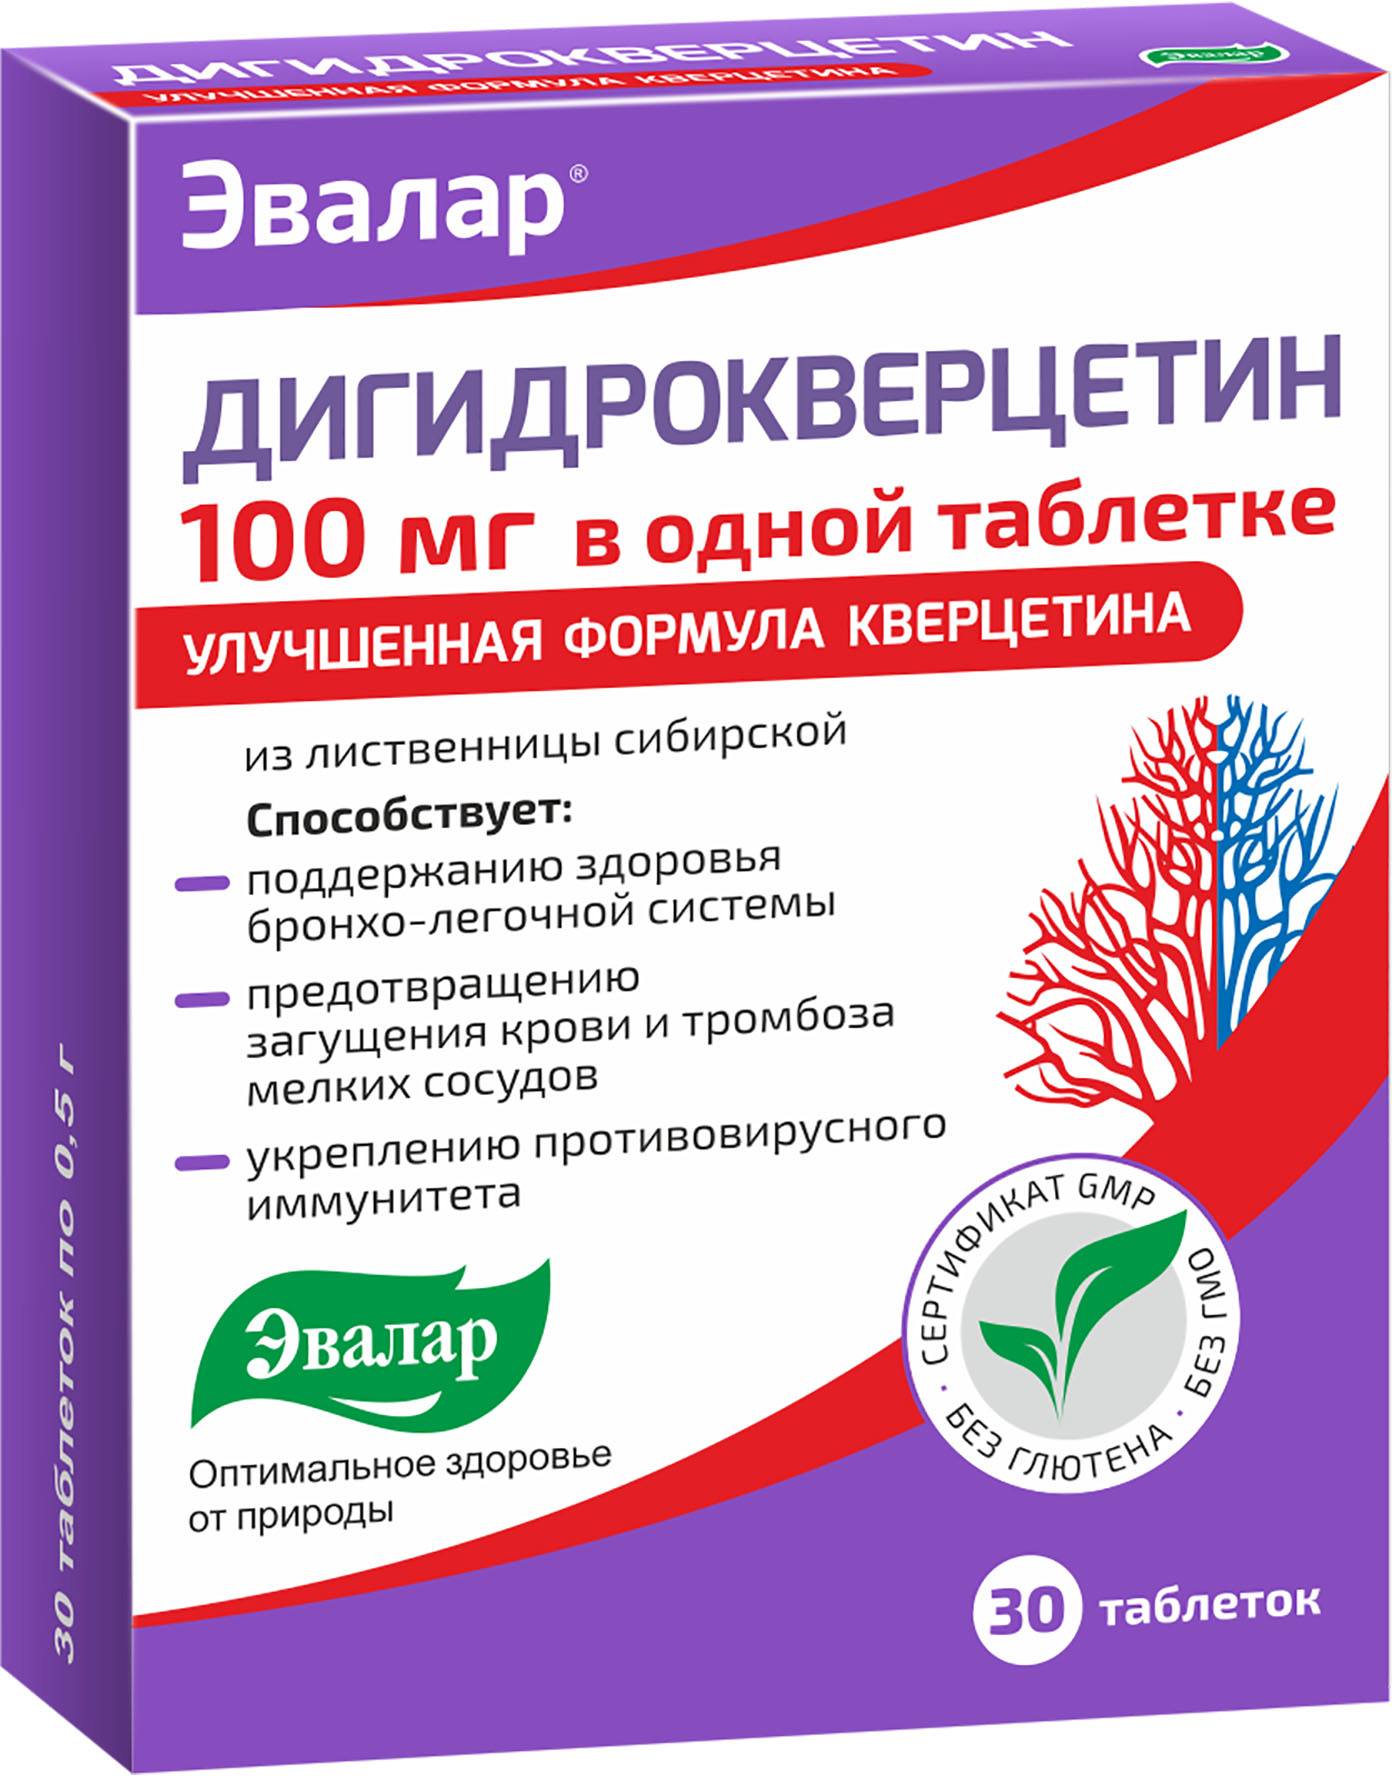 Дигидрокверцетин 100 мг, таблетки 0.5 г, 30 шт. дигидрокверцетин таблетки 60 шт